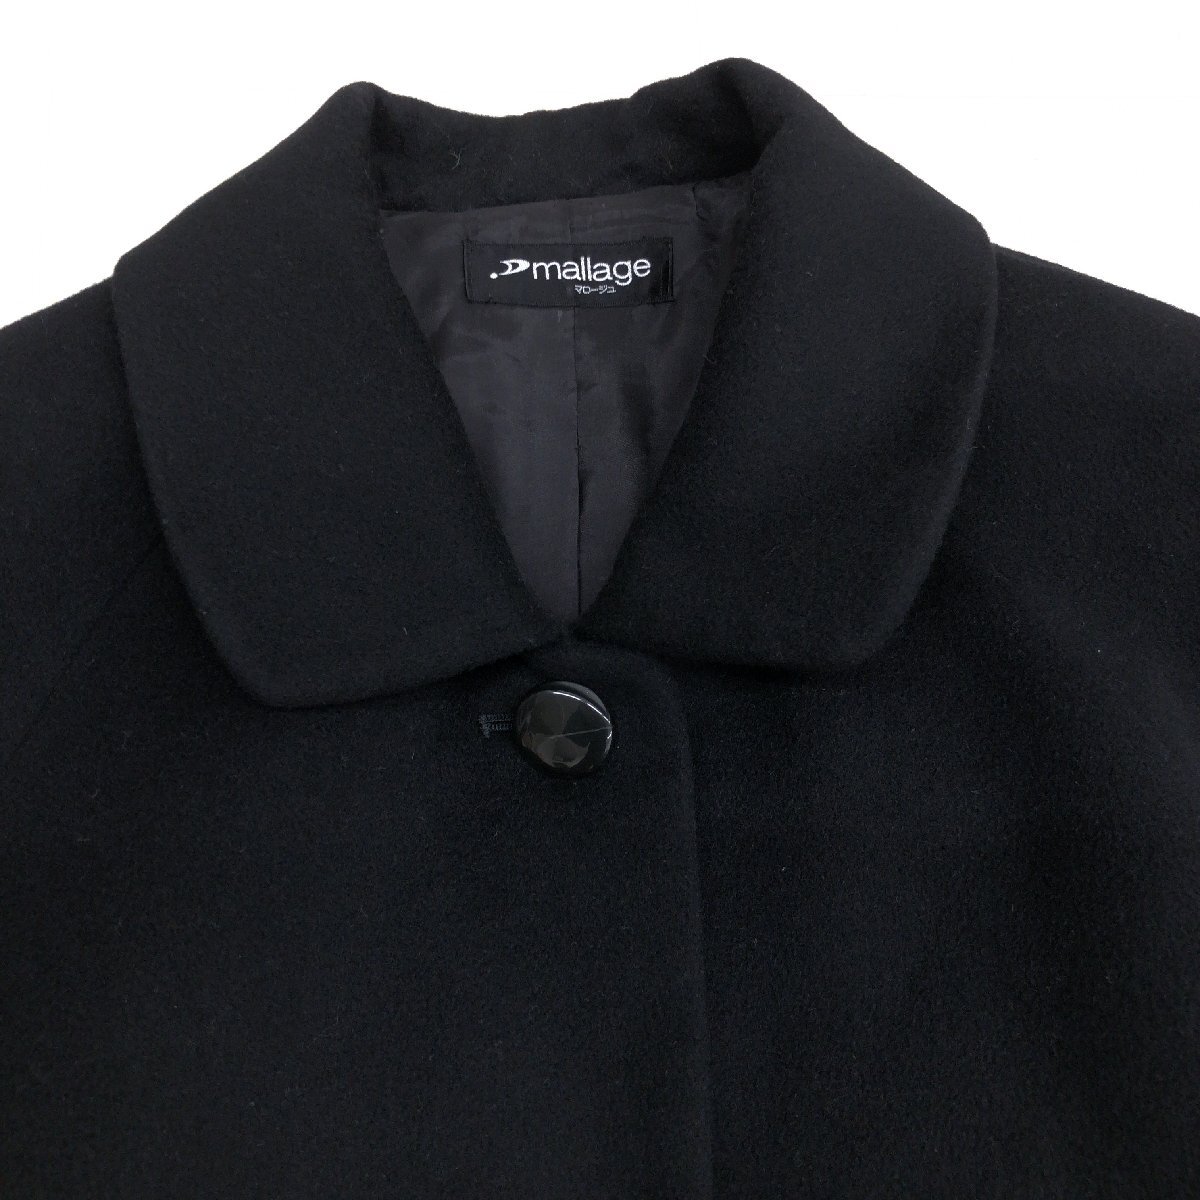 ◆mallage マロージュ 高級カシミヤ100% ロングコート F 黒 ブラック ウールコート カシミア 日本製 国内正規品 レディース 女性用 婦人の画像4